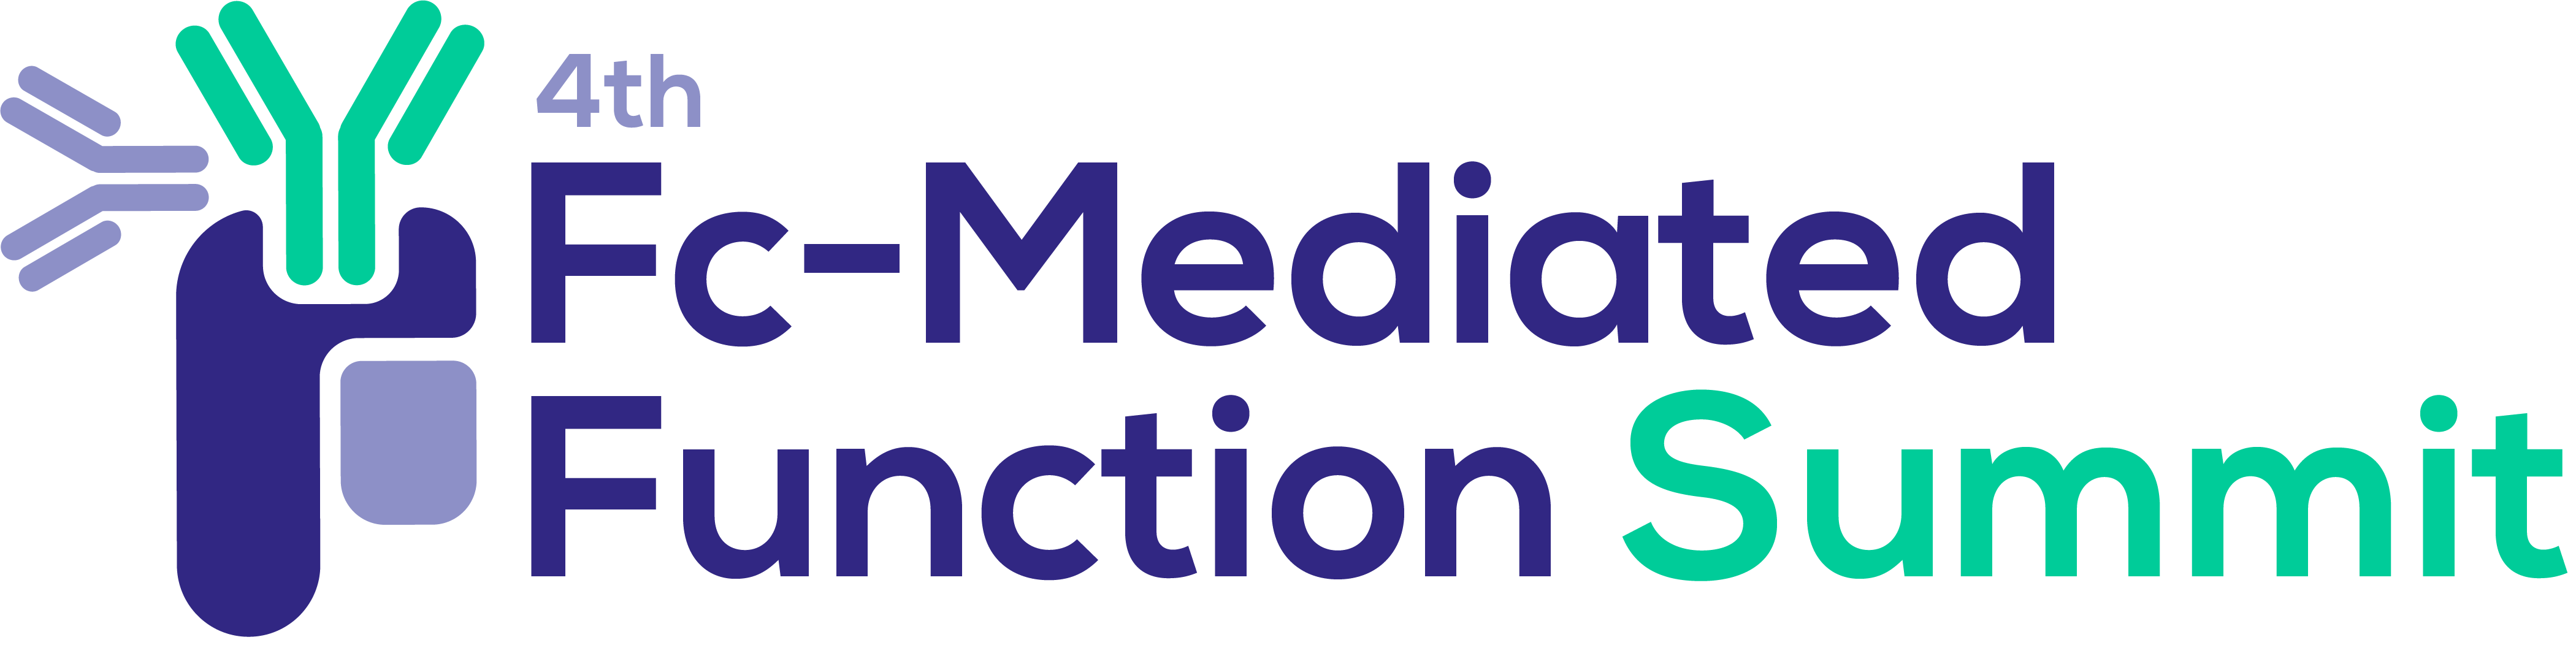 4th Fc-Mediated Function Summit - Logo